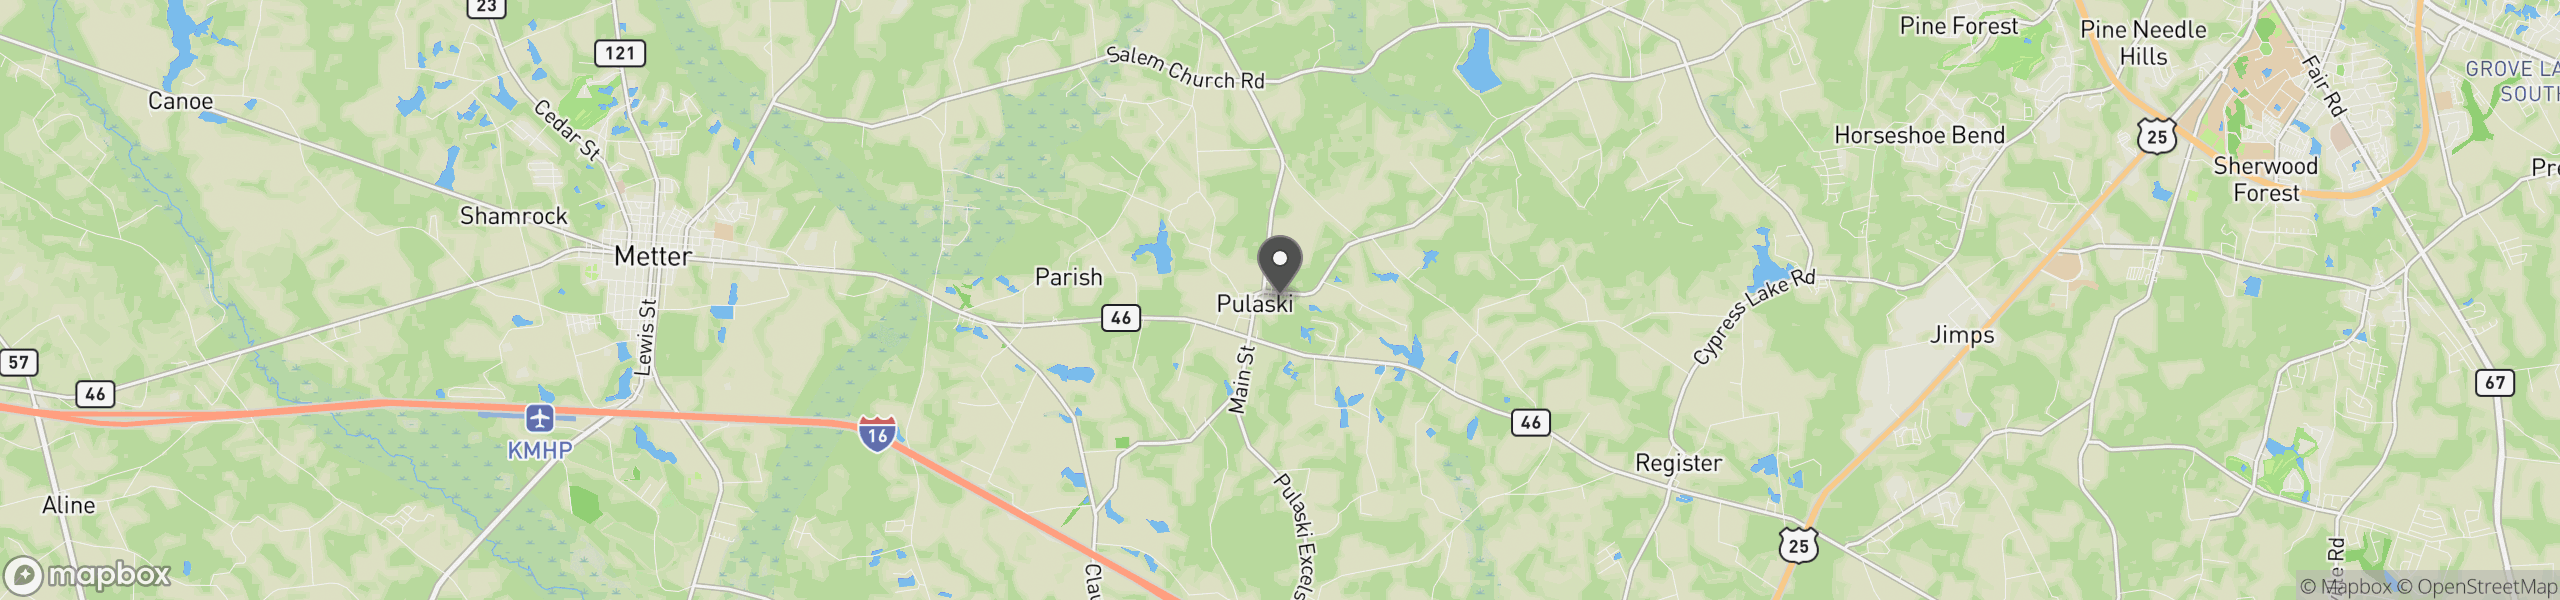 Pulaski, GA